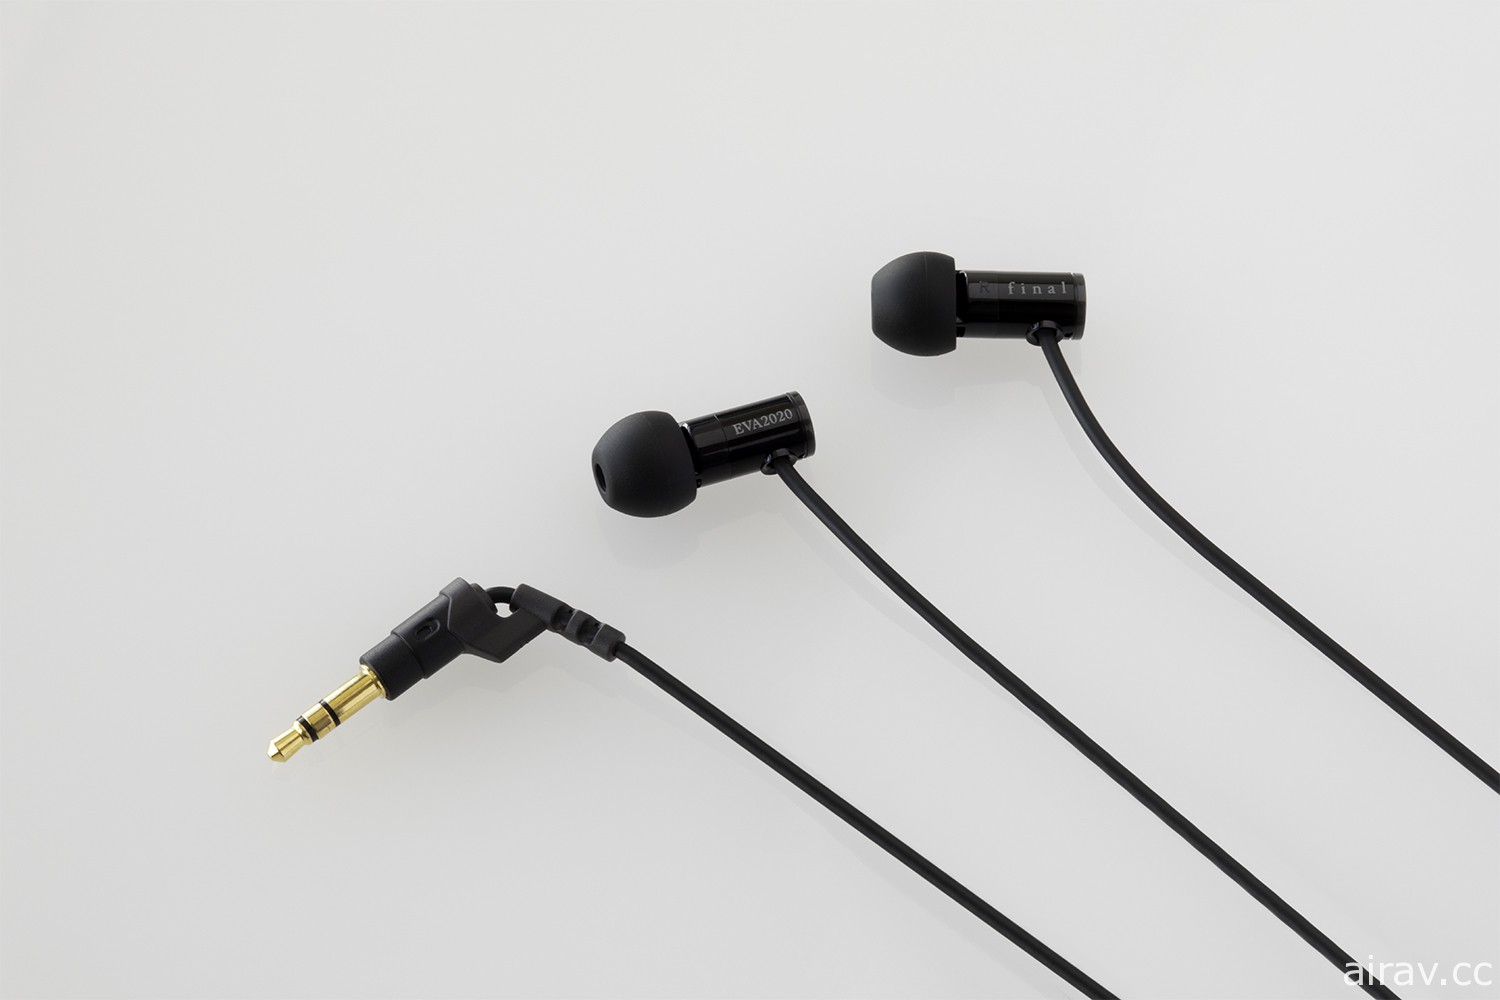 SNEXT 發表《福音戰士》合作設計款式無線 / 有線耳機 預定 8 月上市